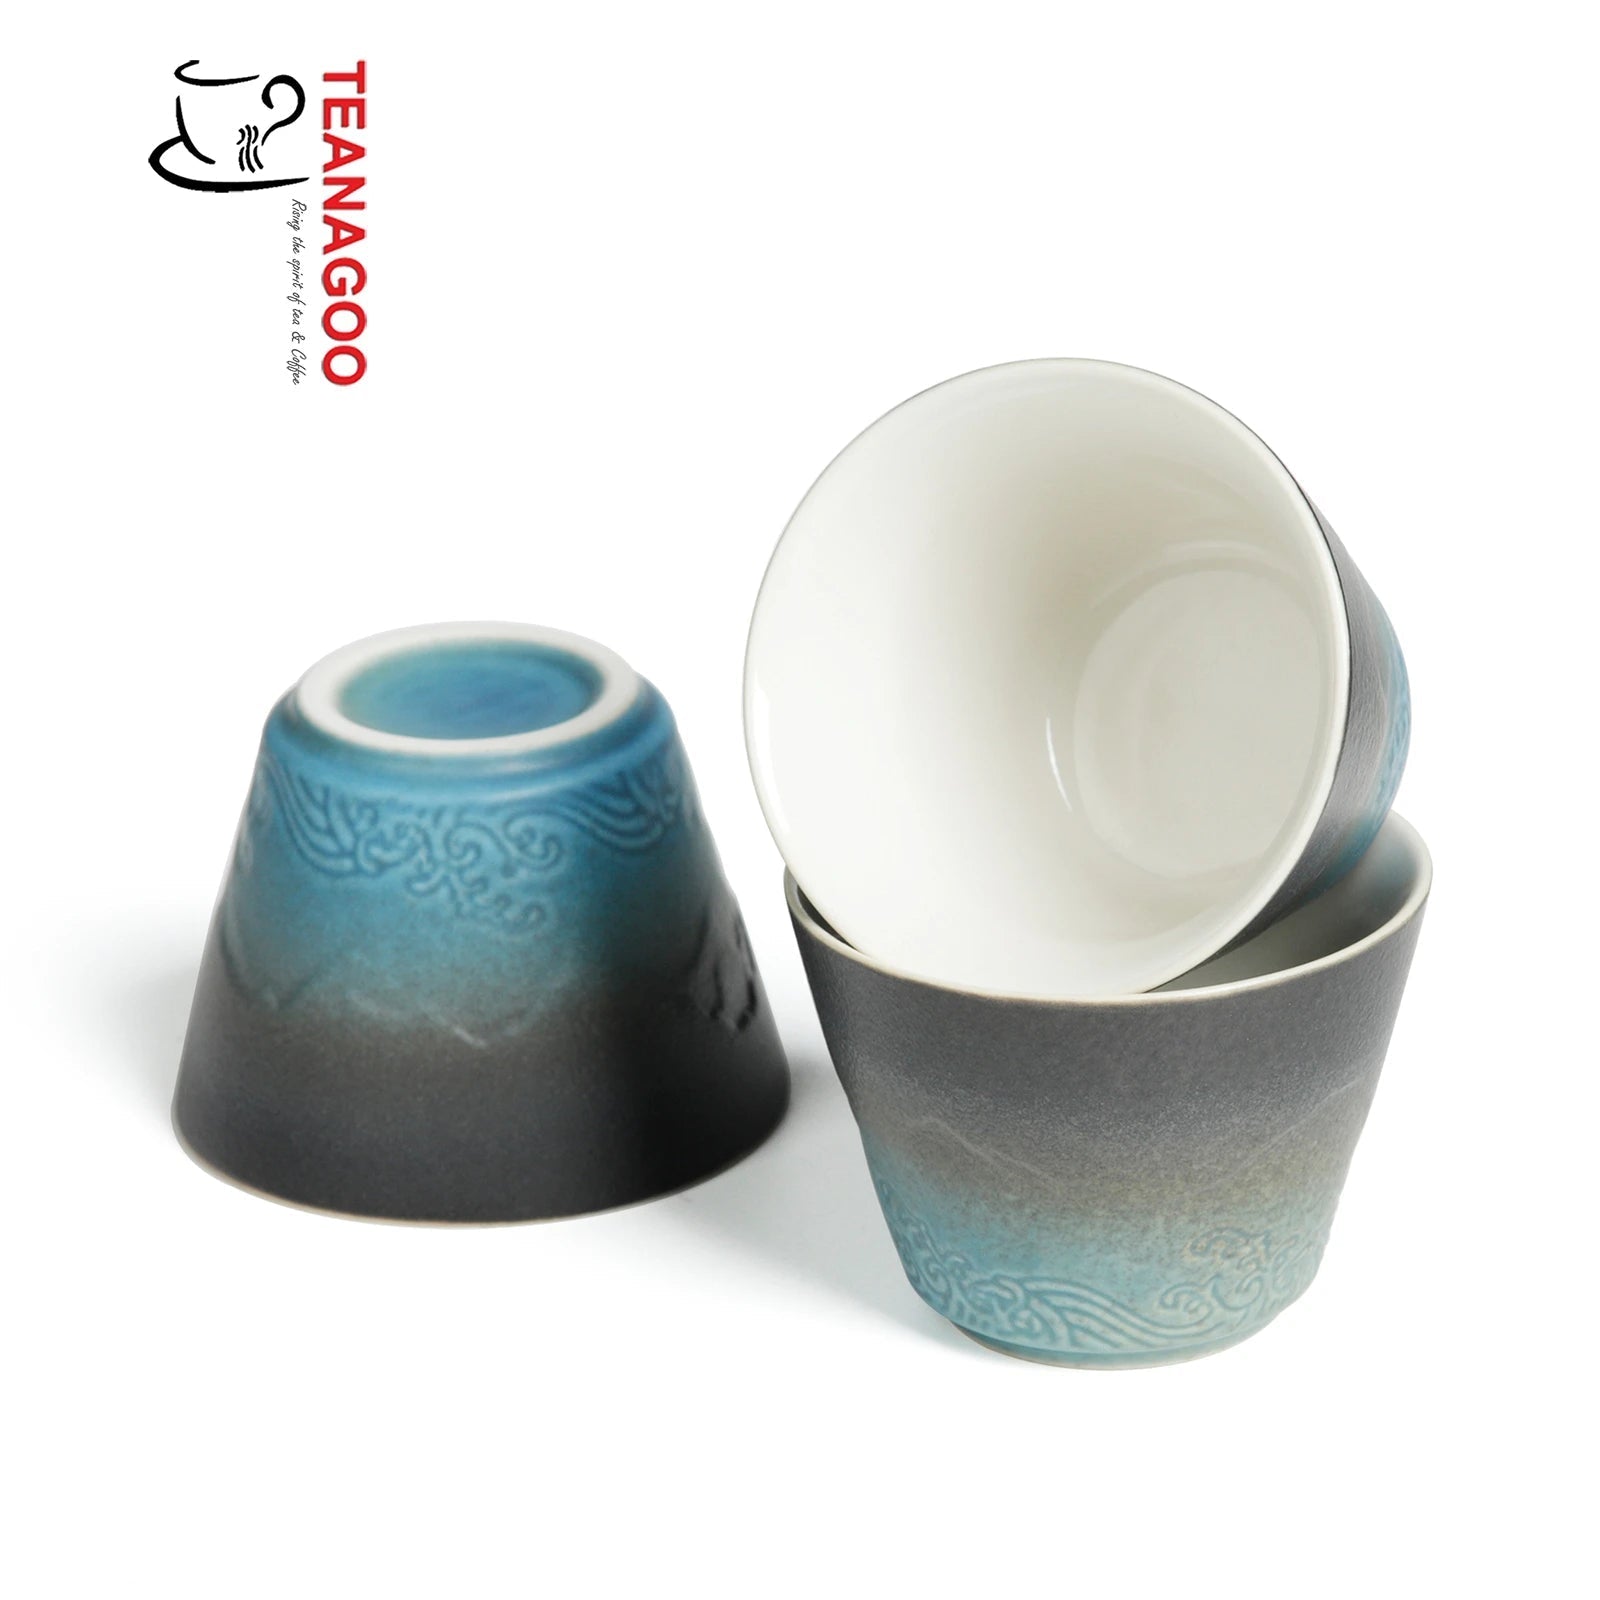 https://www.teanagoo.com/cdn/shop/products/portable-mini-travel-tea-set-1pot3cups-280-ml-99-oz-ts02-835421.jpg?v=1662107843&width=1946